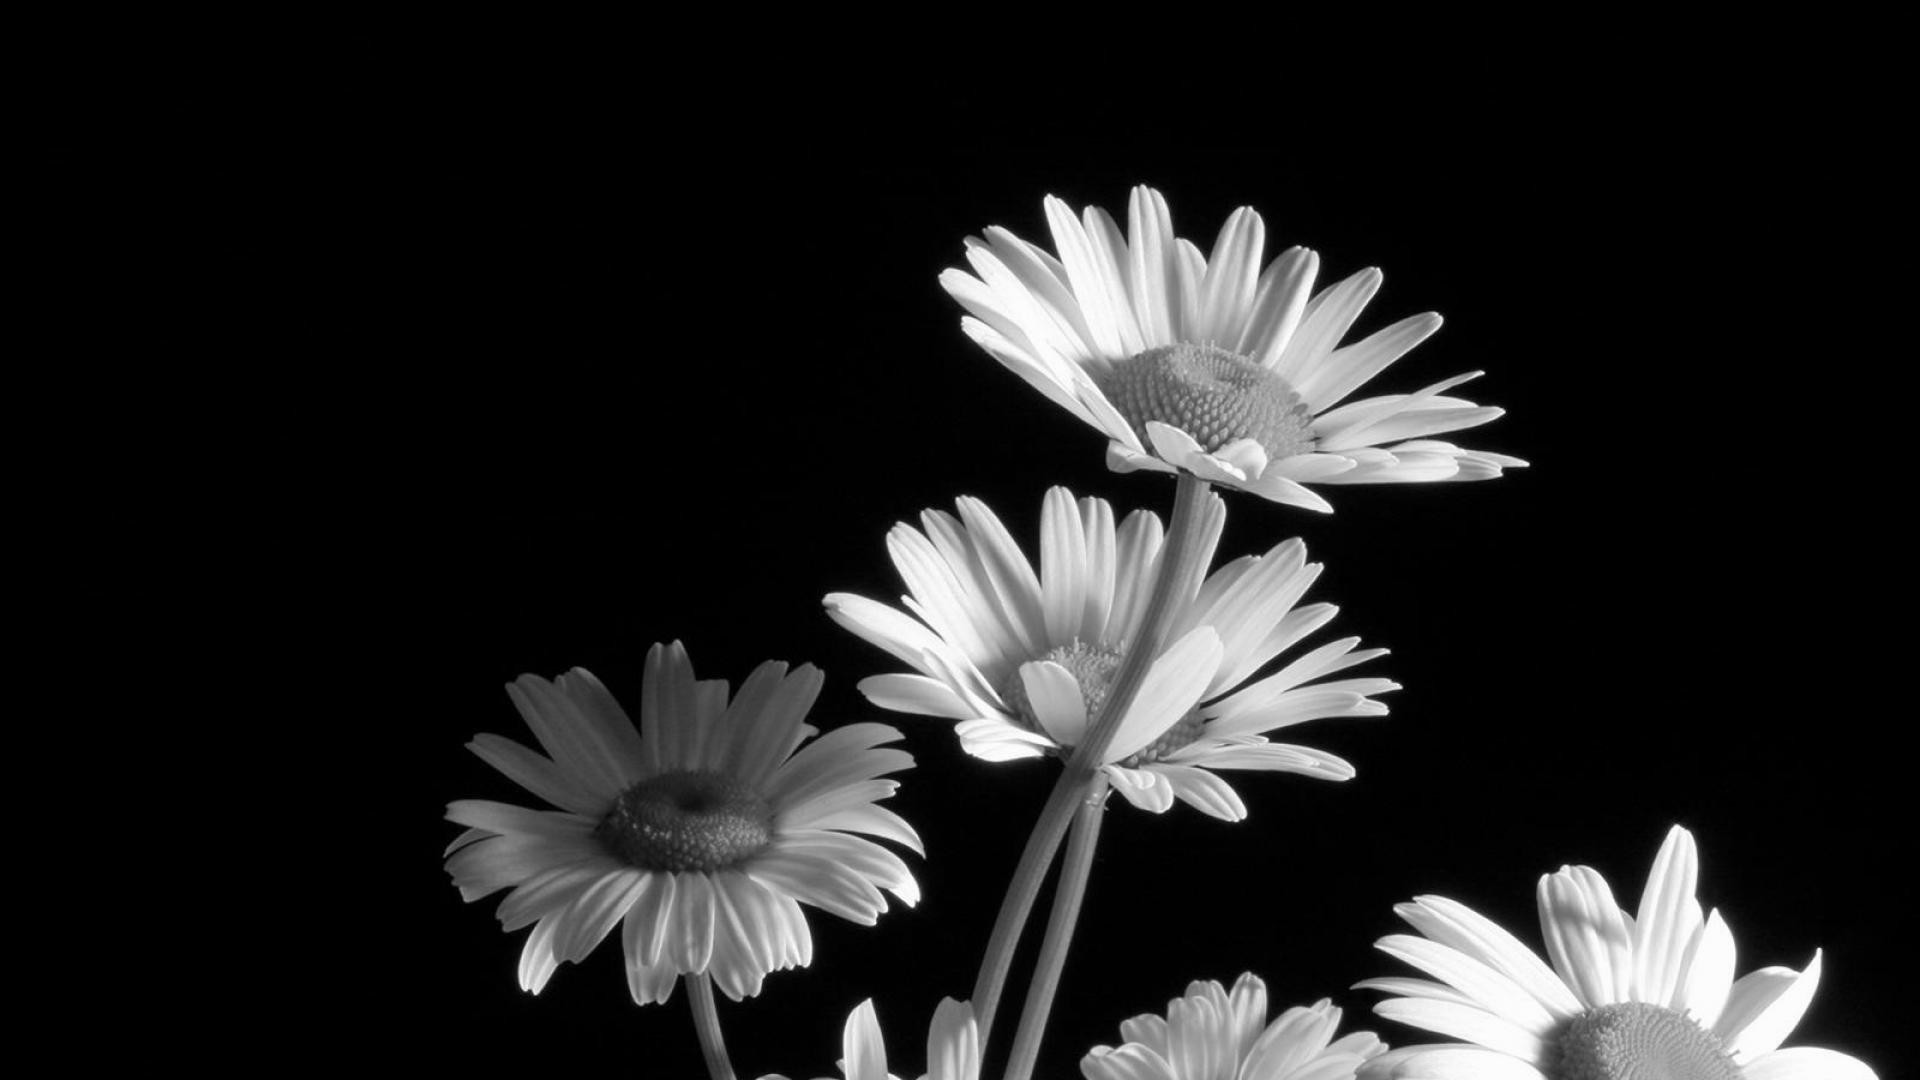 1920x1080 black and white flower wallpaper